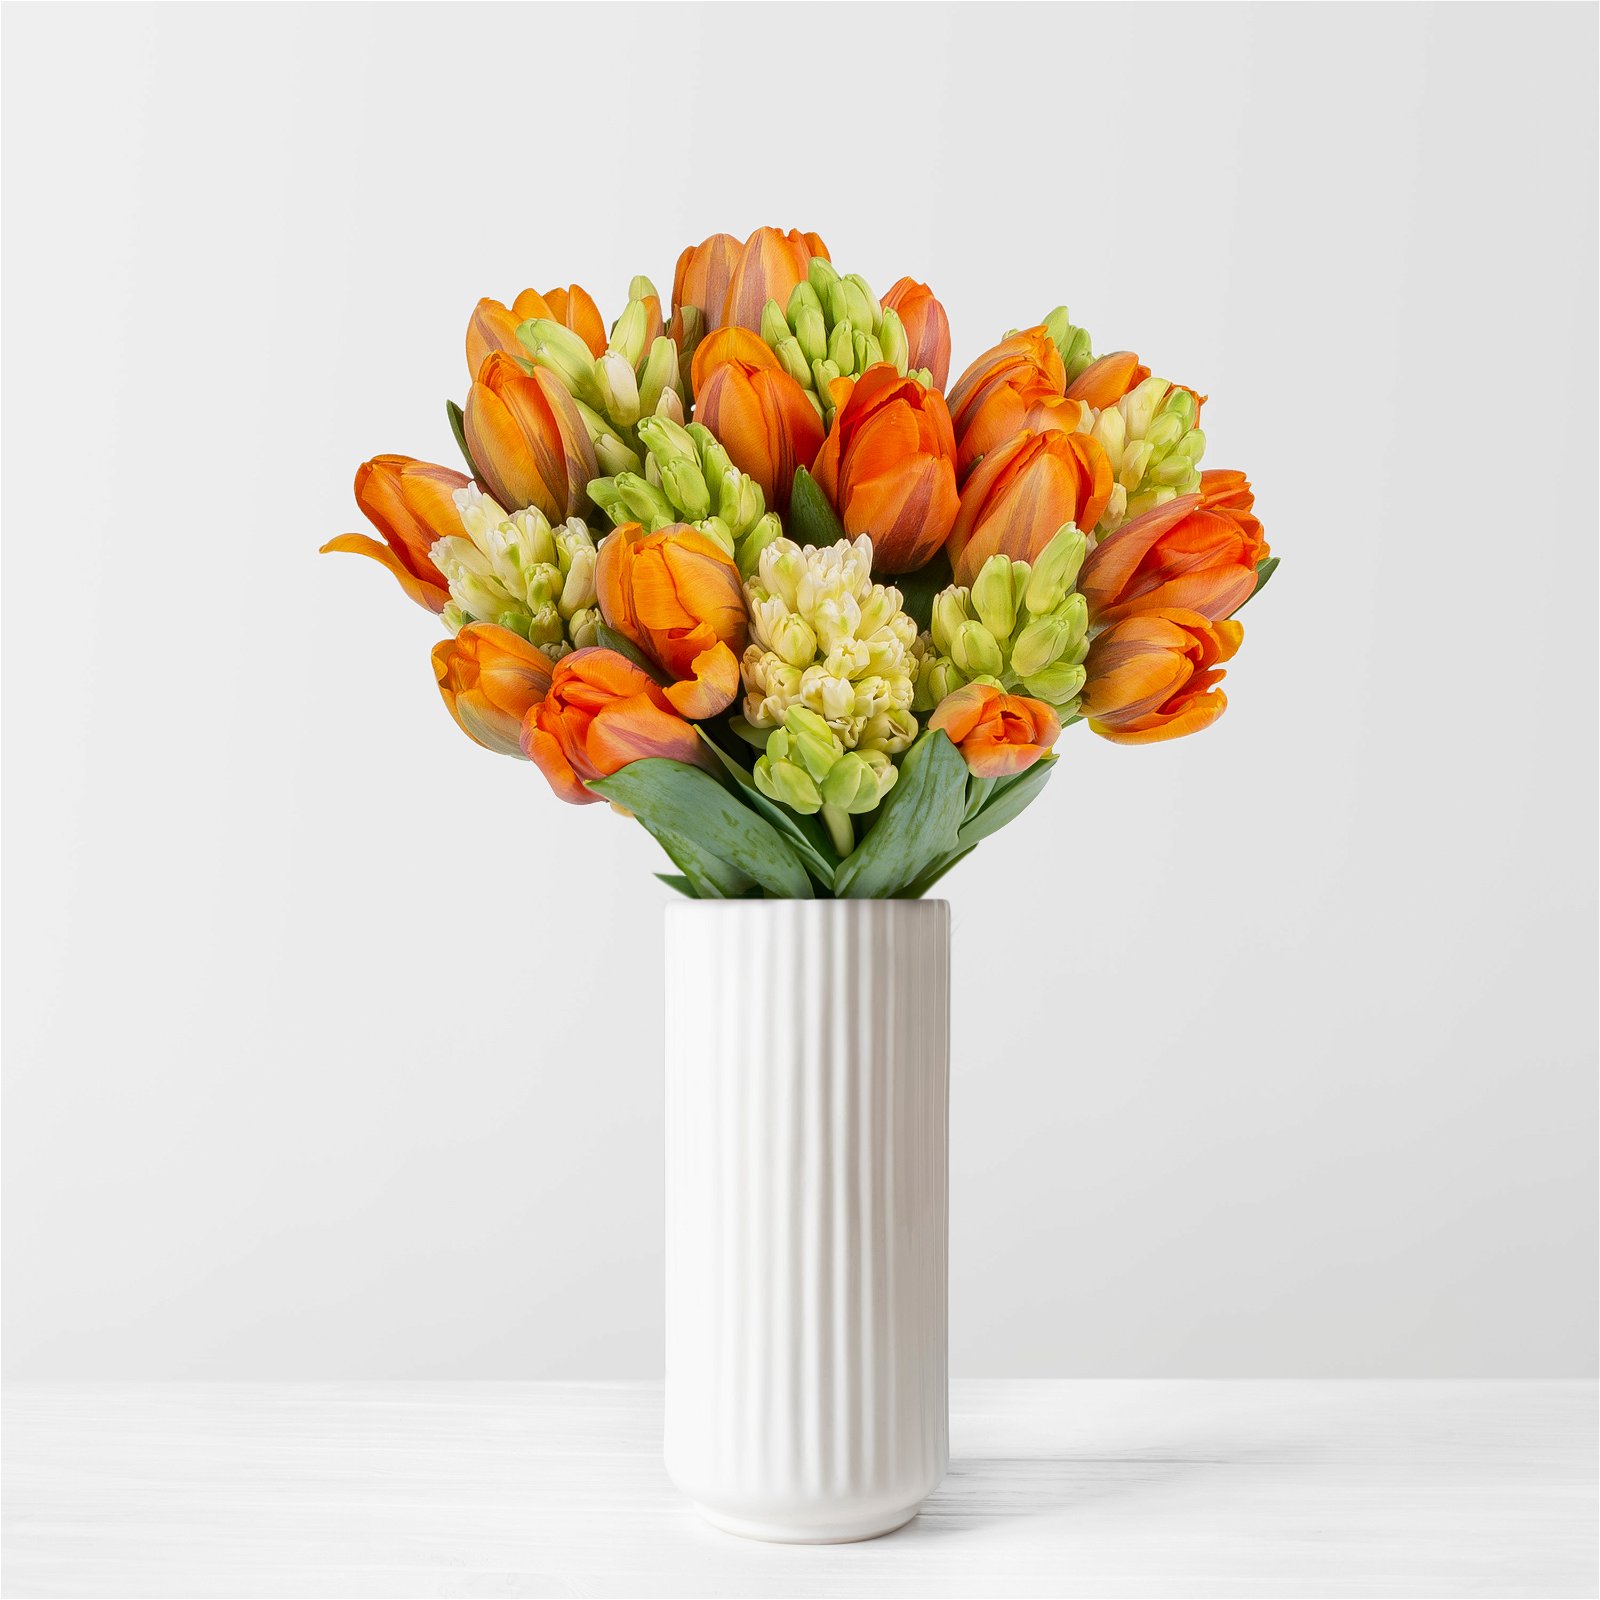 Gemischter Blumenbund 'Frühlingszeit', orange-weiß, inkl. gratis Grußkarte